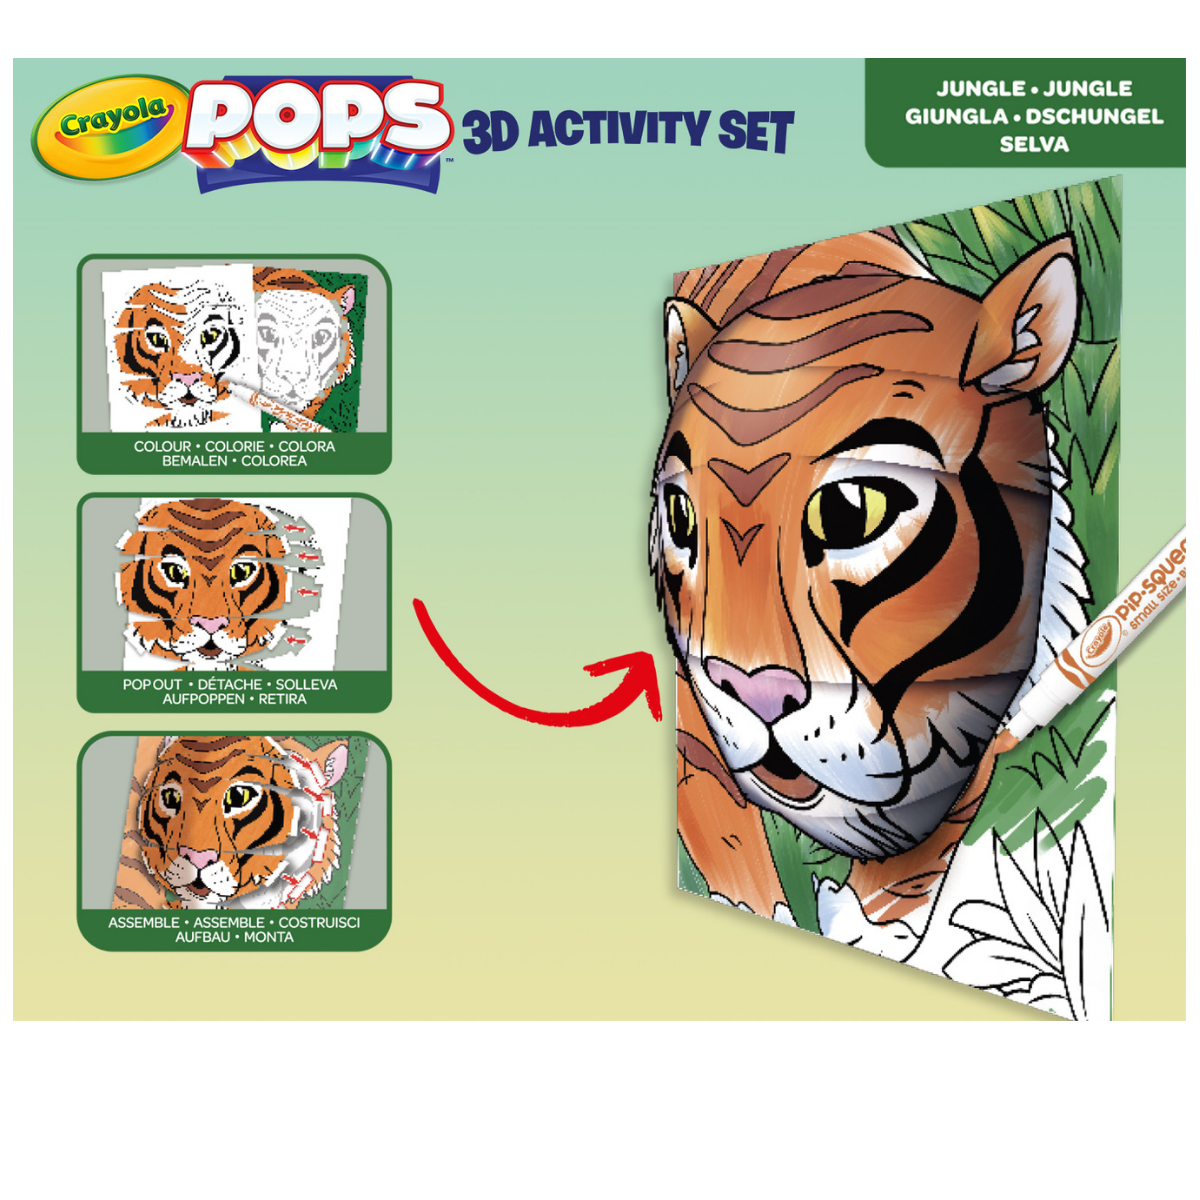 Crayola pops 3d activity set tigre e giungla – colora e crea disegni tridimensionali - CRAYOLA